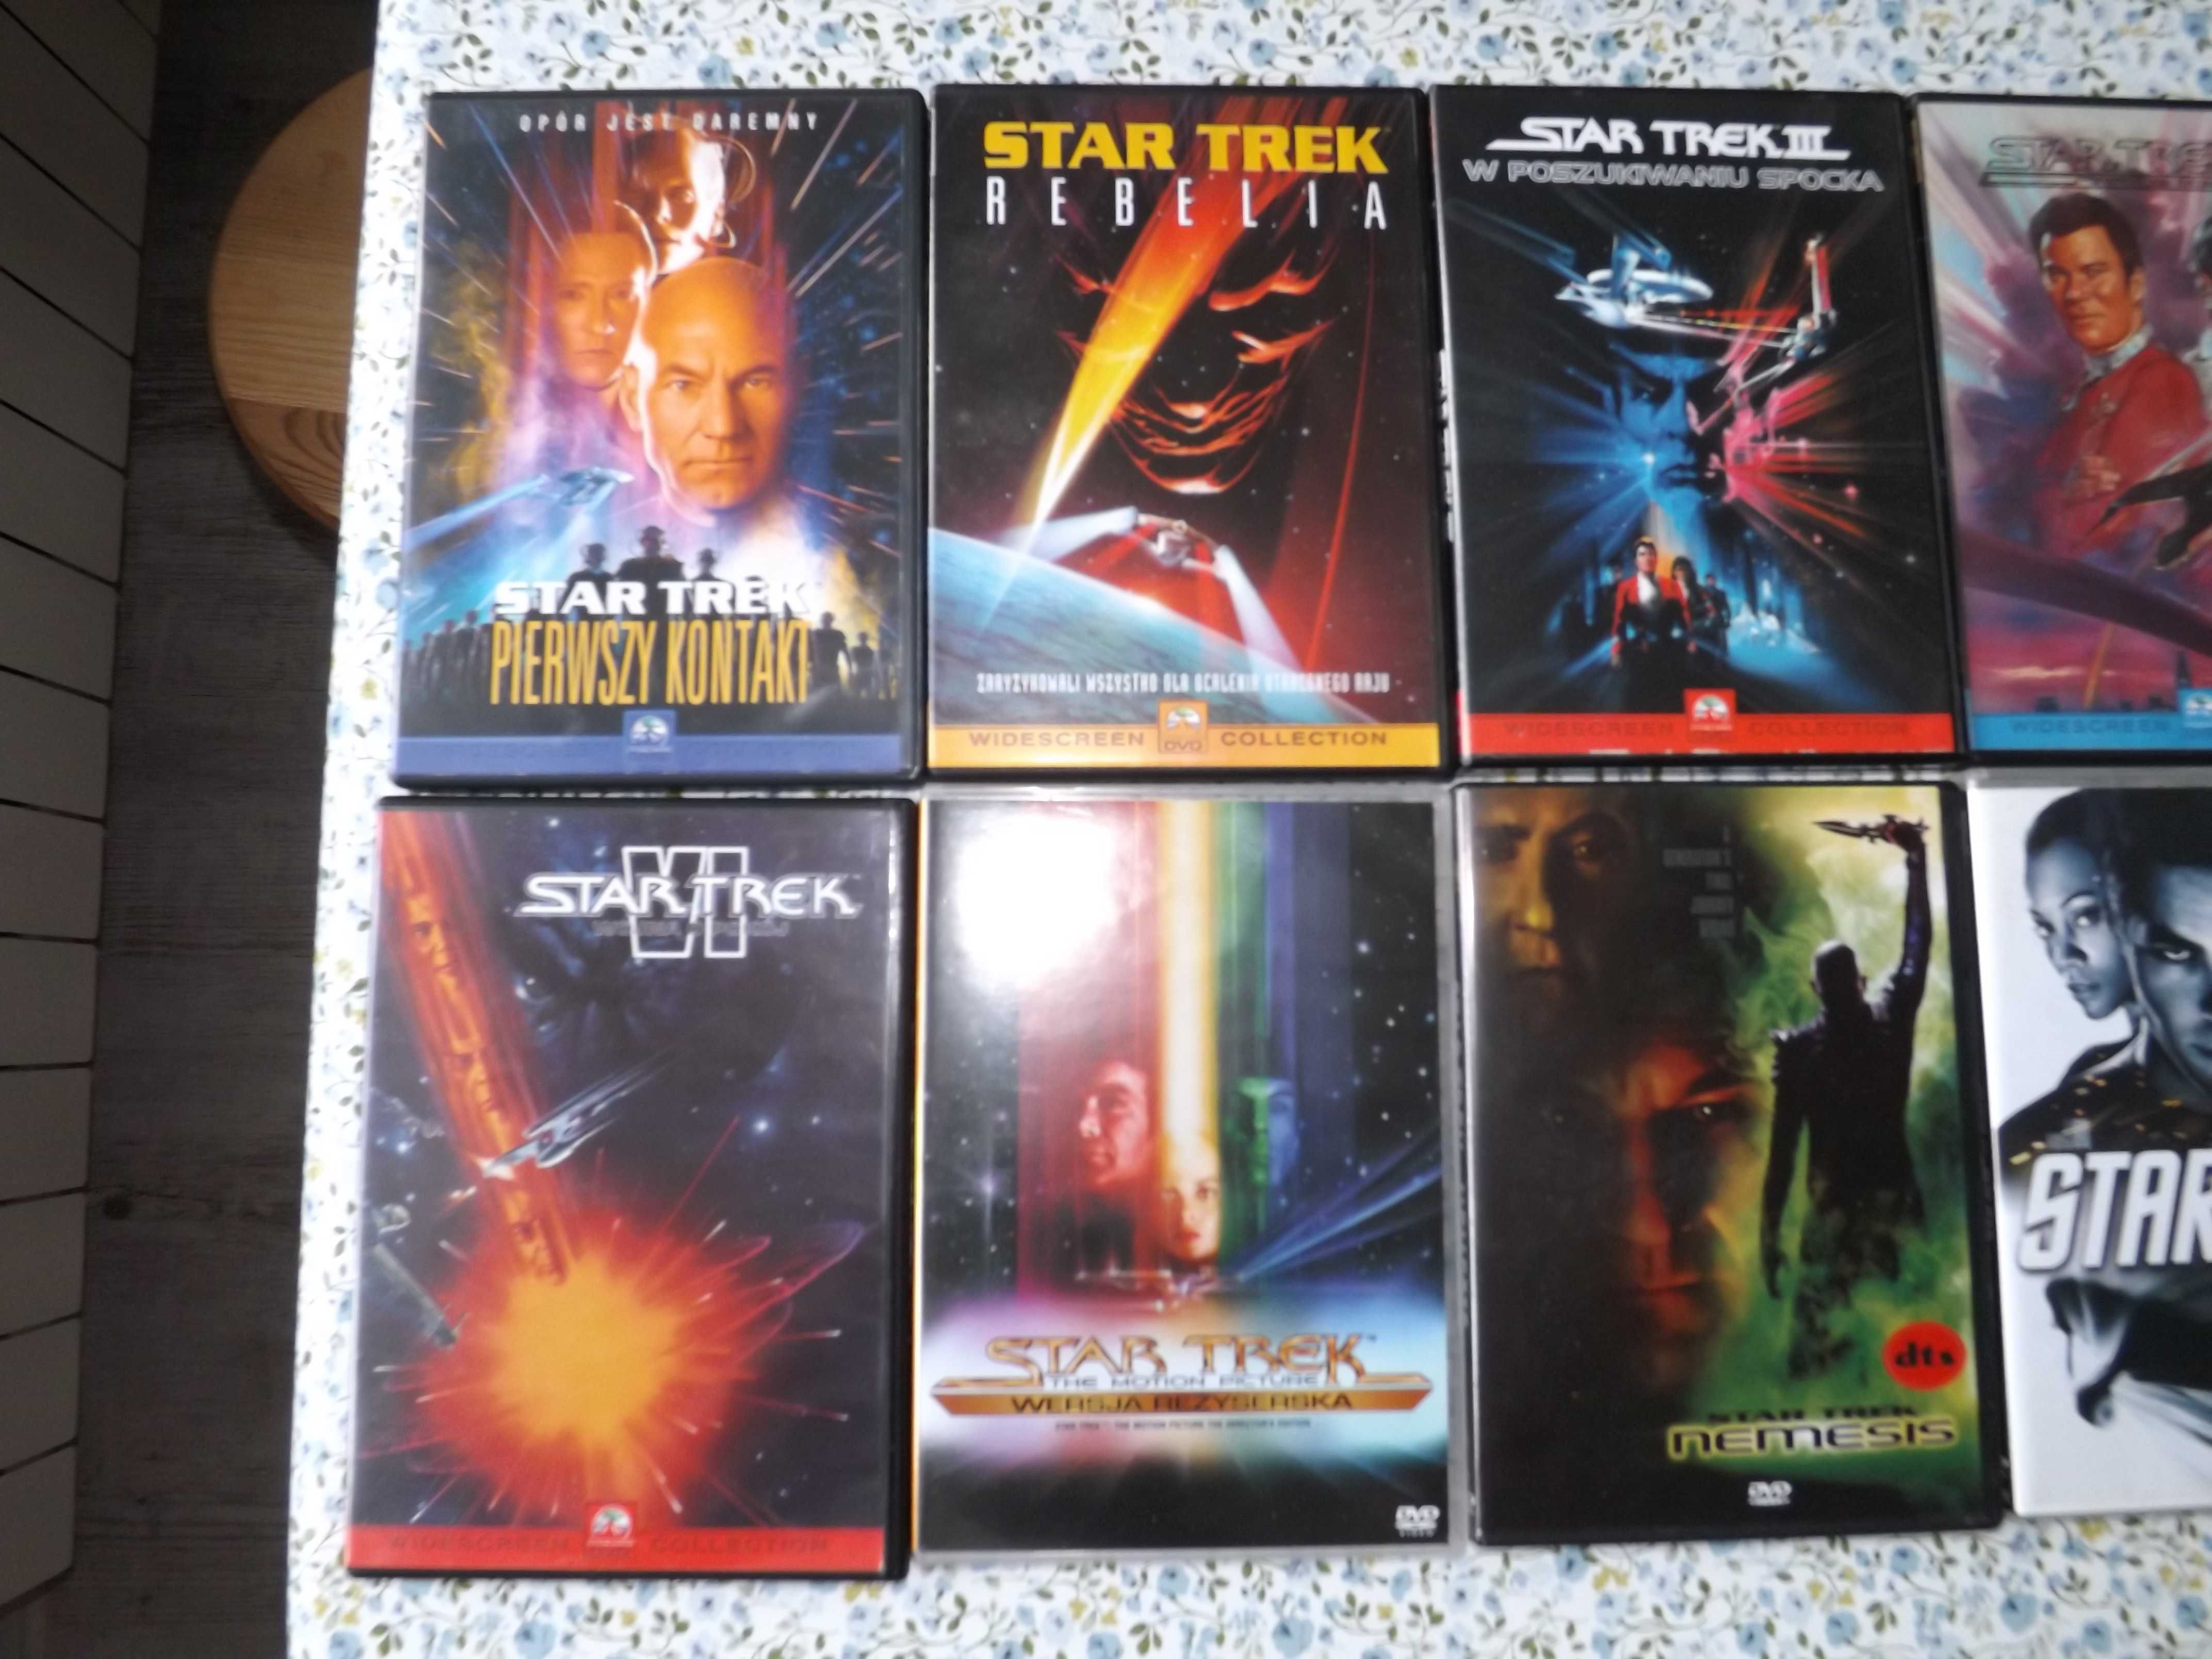 Star Trek Star wars kolekcja dvd, film, bajka